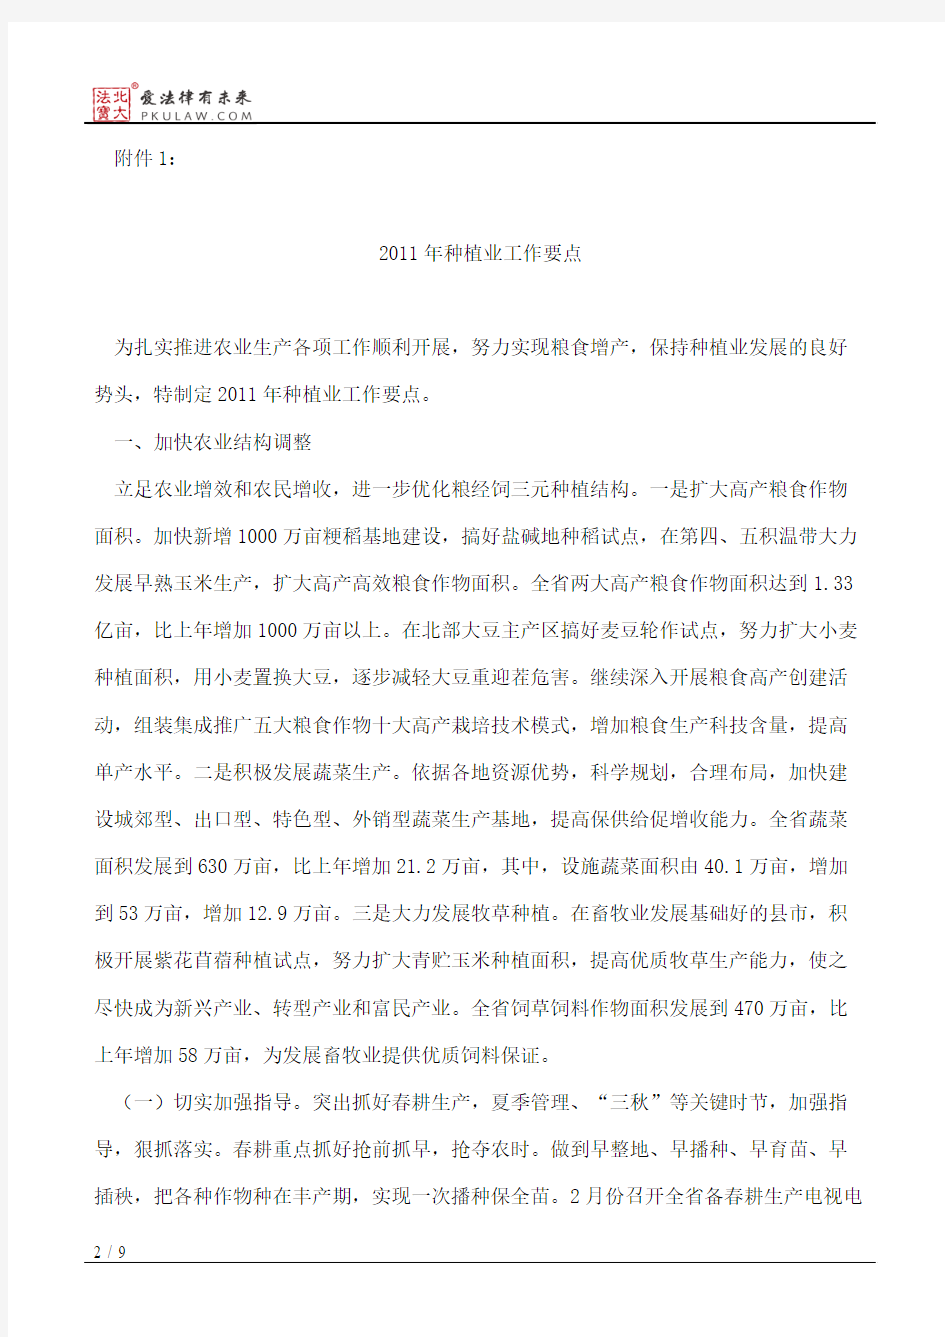 黑龙江省农业委员会关于印发《2011年种植业工作要点》的通知